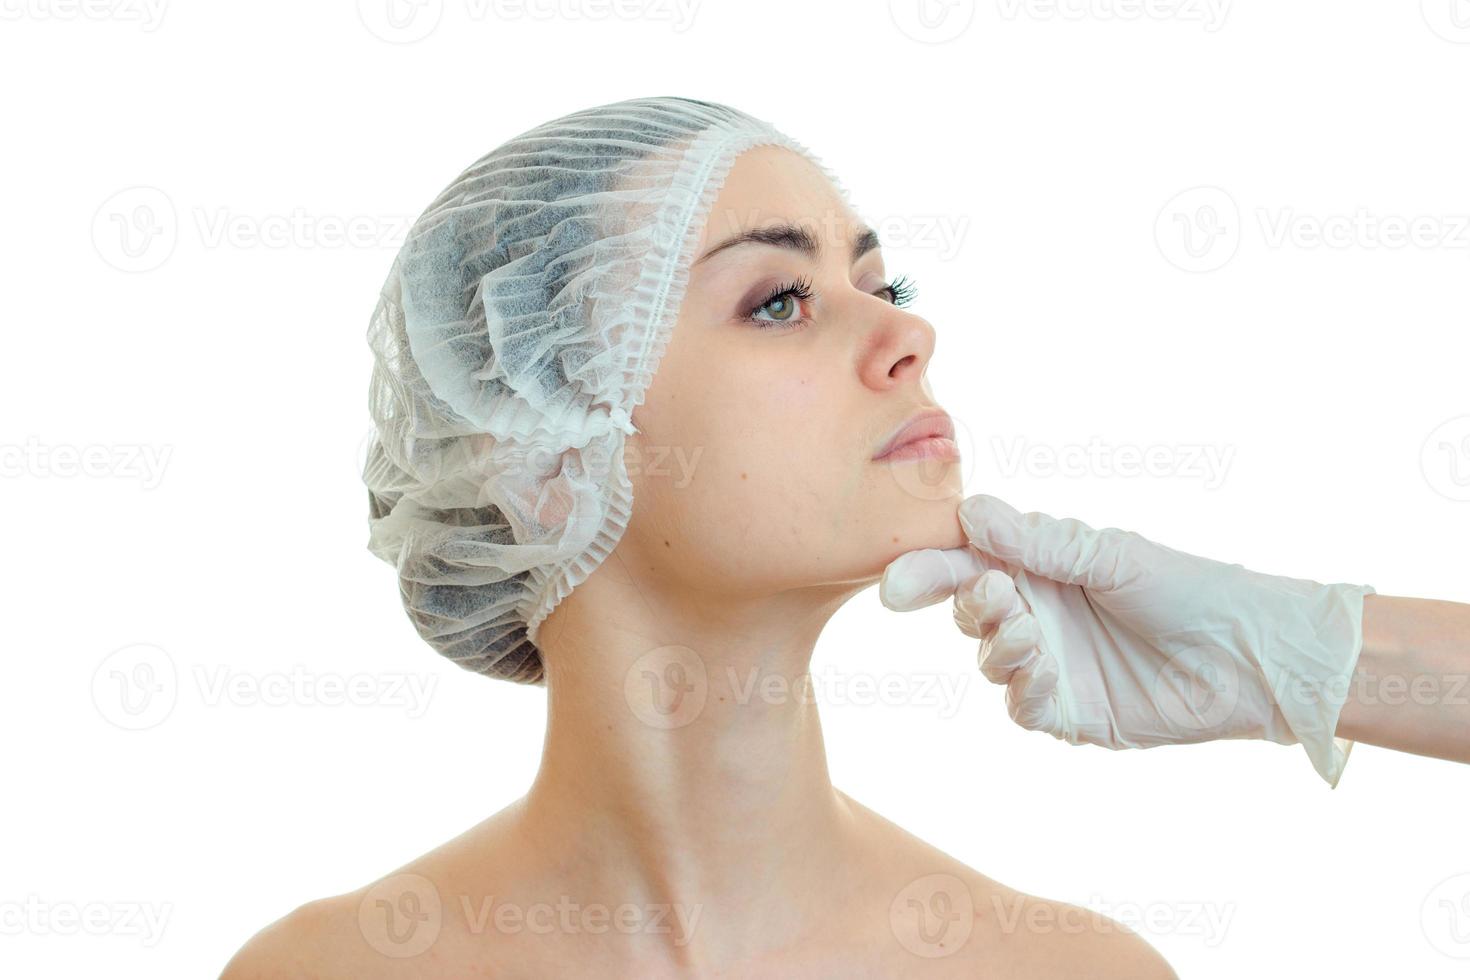 horizontales Porträt eines jungen Mädchens in der Arztmütze, das ihren Kopf in Richtung eines Arztes drehte foto